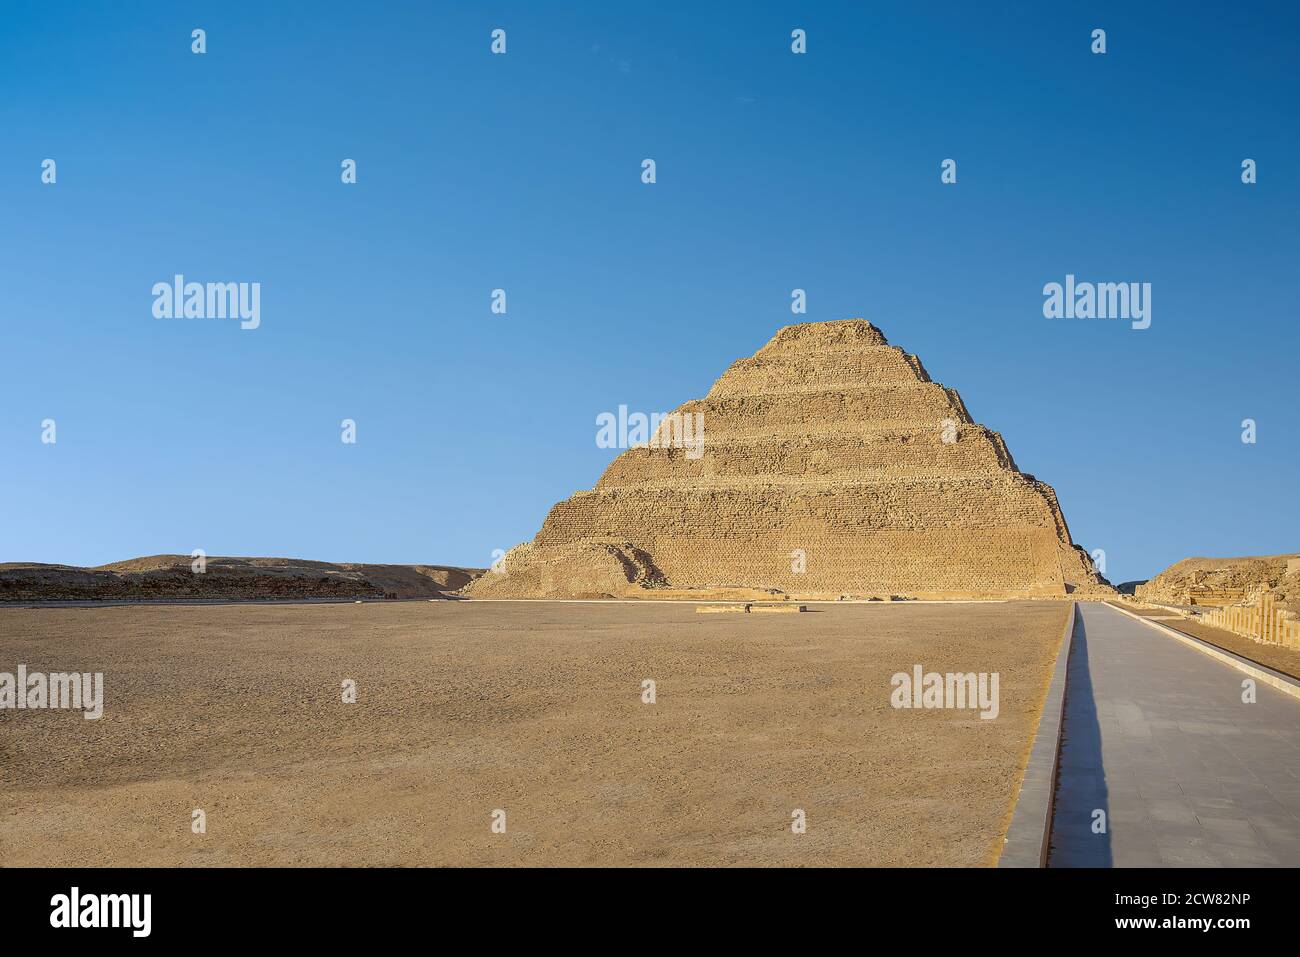 Memphis, Égypt - la plus ancienne pyramide debout en Égypte, conçue par Imhotep pour le roi Djoser, située à Saqqara, un ancien bu Banque D'Images